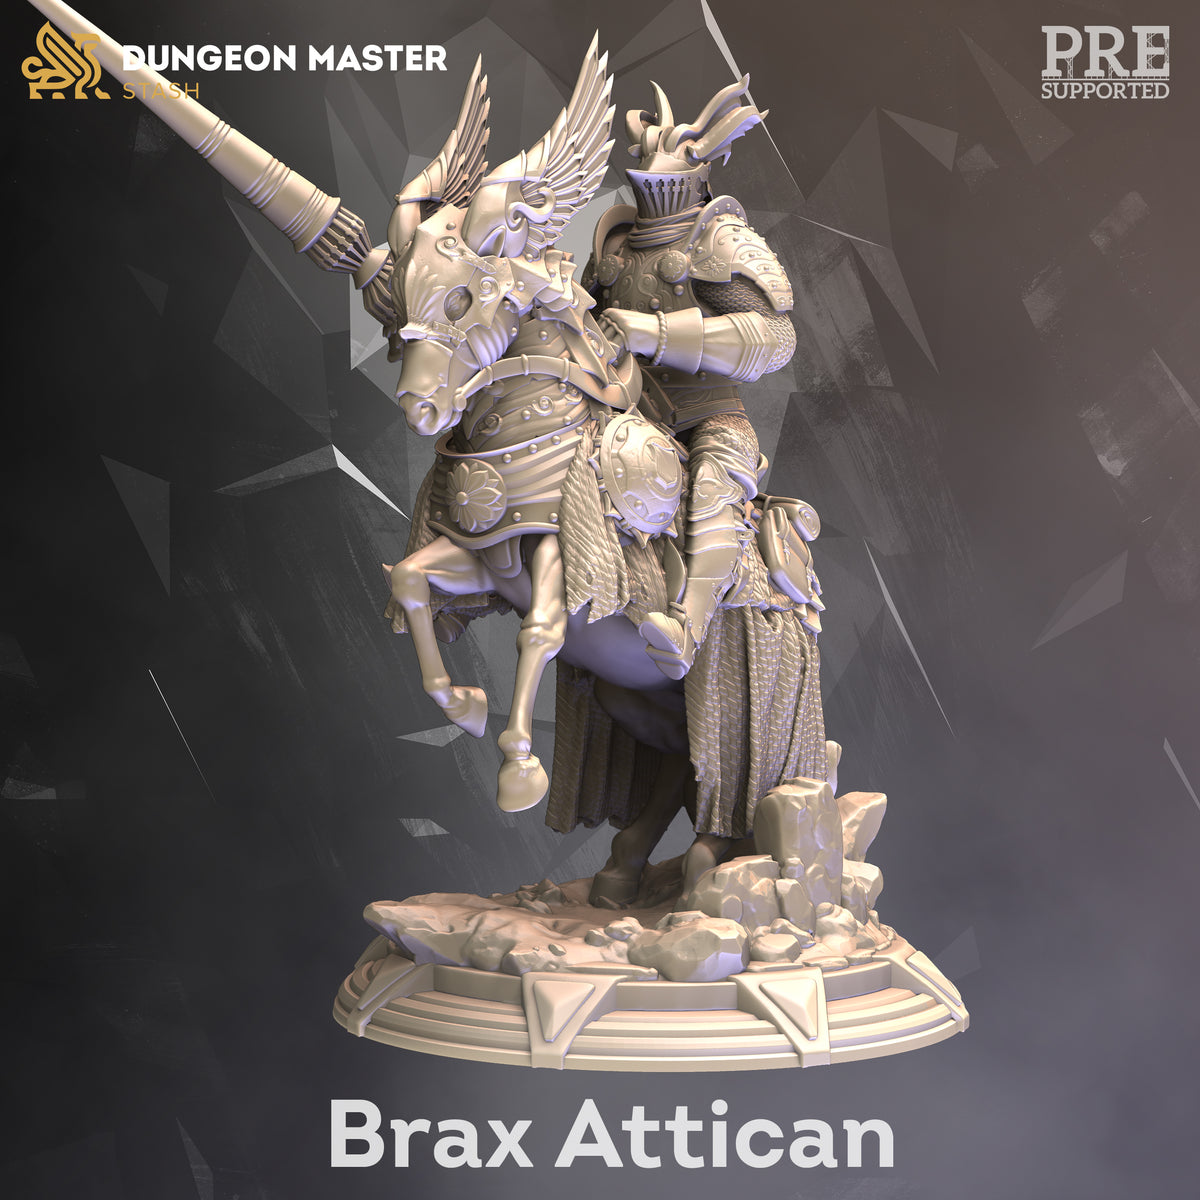 Brax Attican